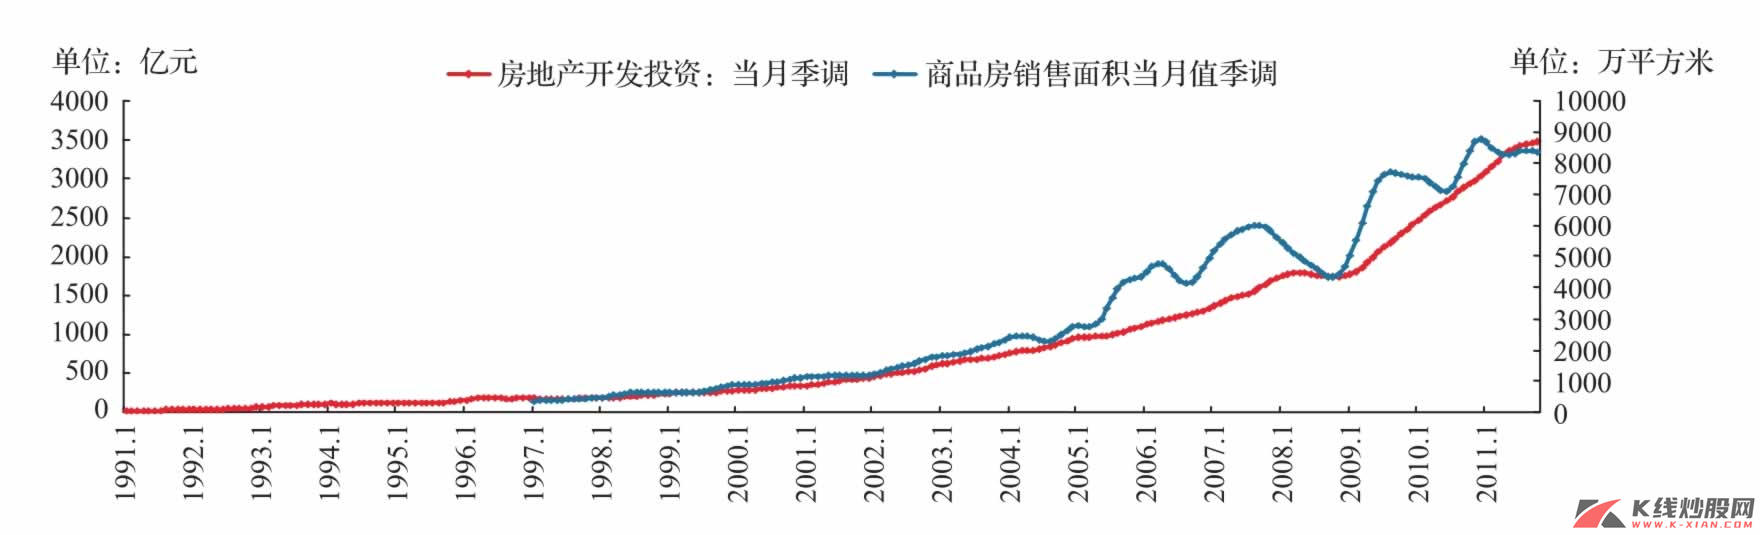 中国房地产开发投资与商品房销售面积